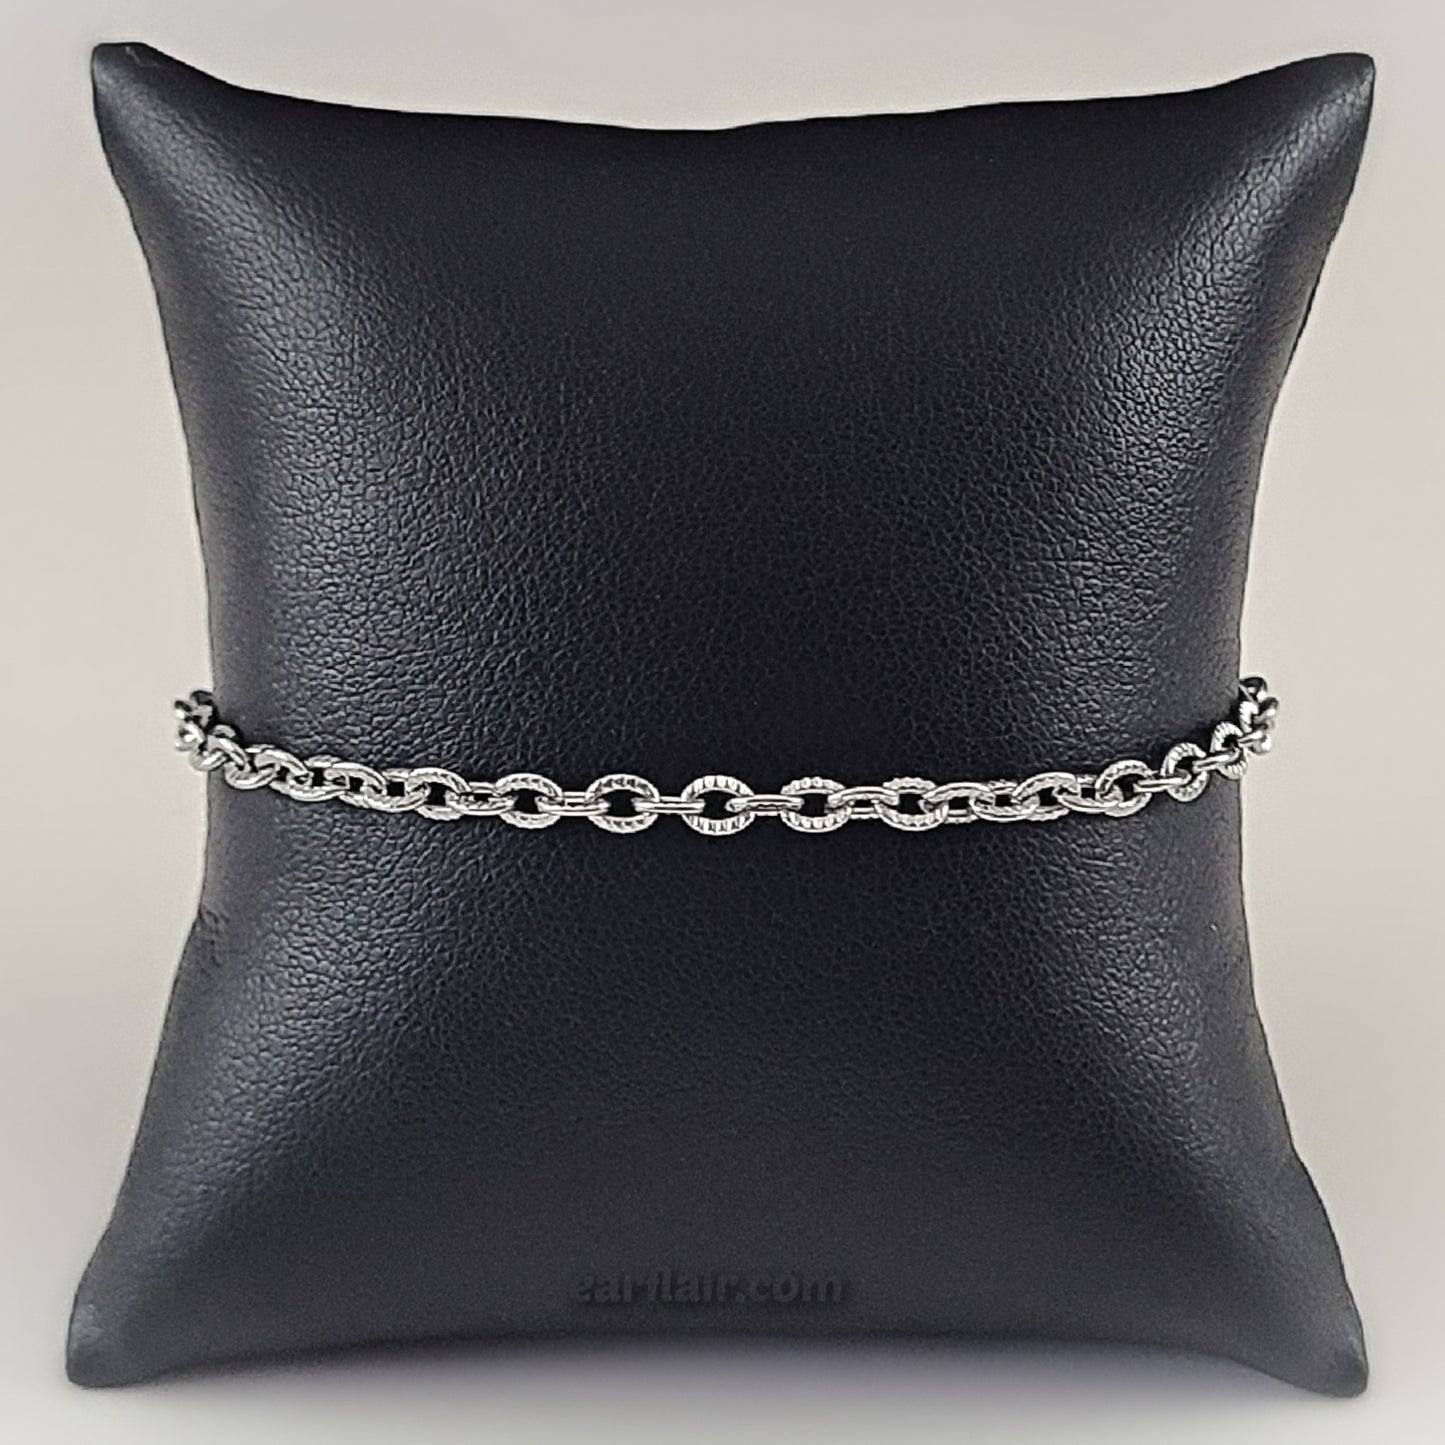 Stainless Steel Adjustable Textured Oval Bracelet / Anklet